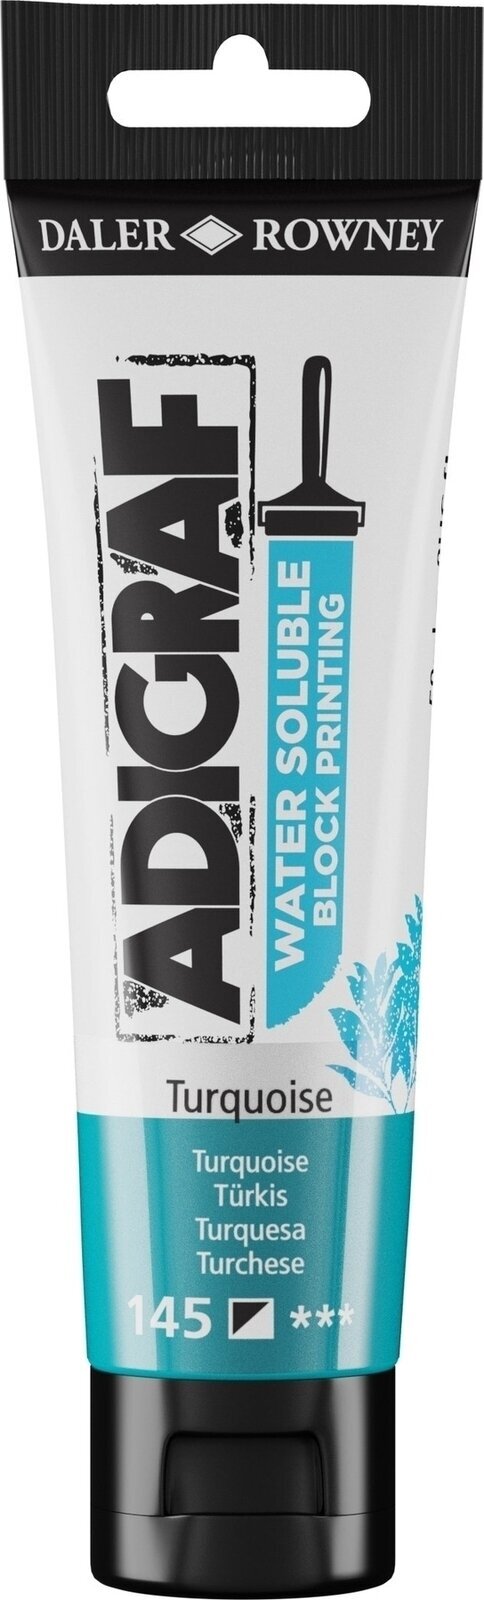 Boja za linorez Daler Rowney Adigraf Block Printing Water Soluble Colour Boja za linorez Turquoise 59 ml